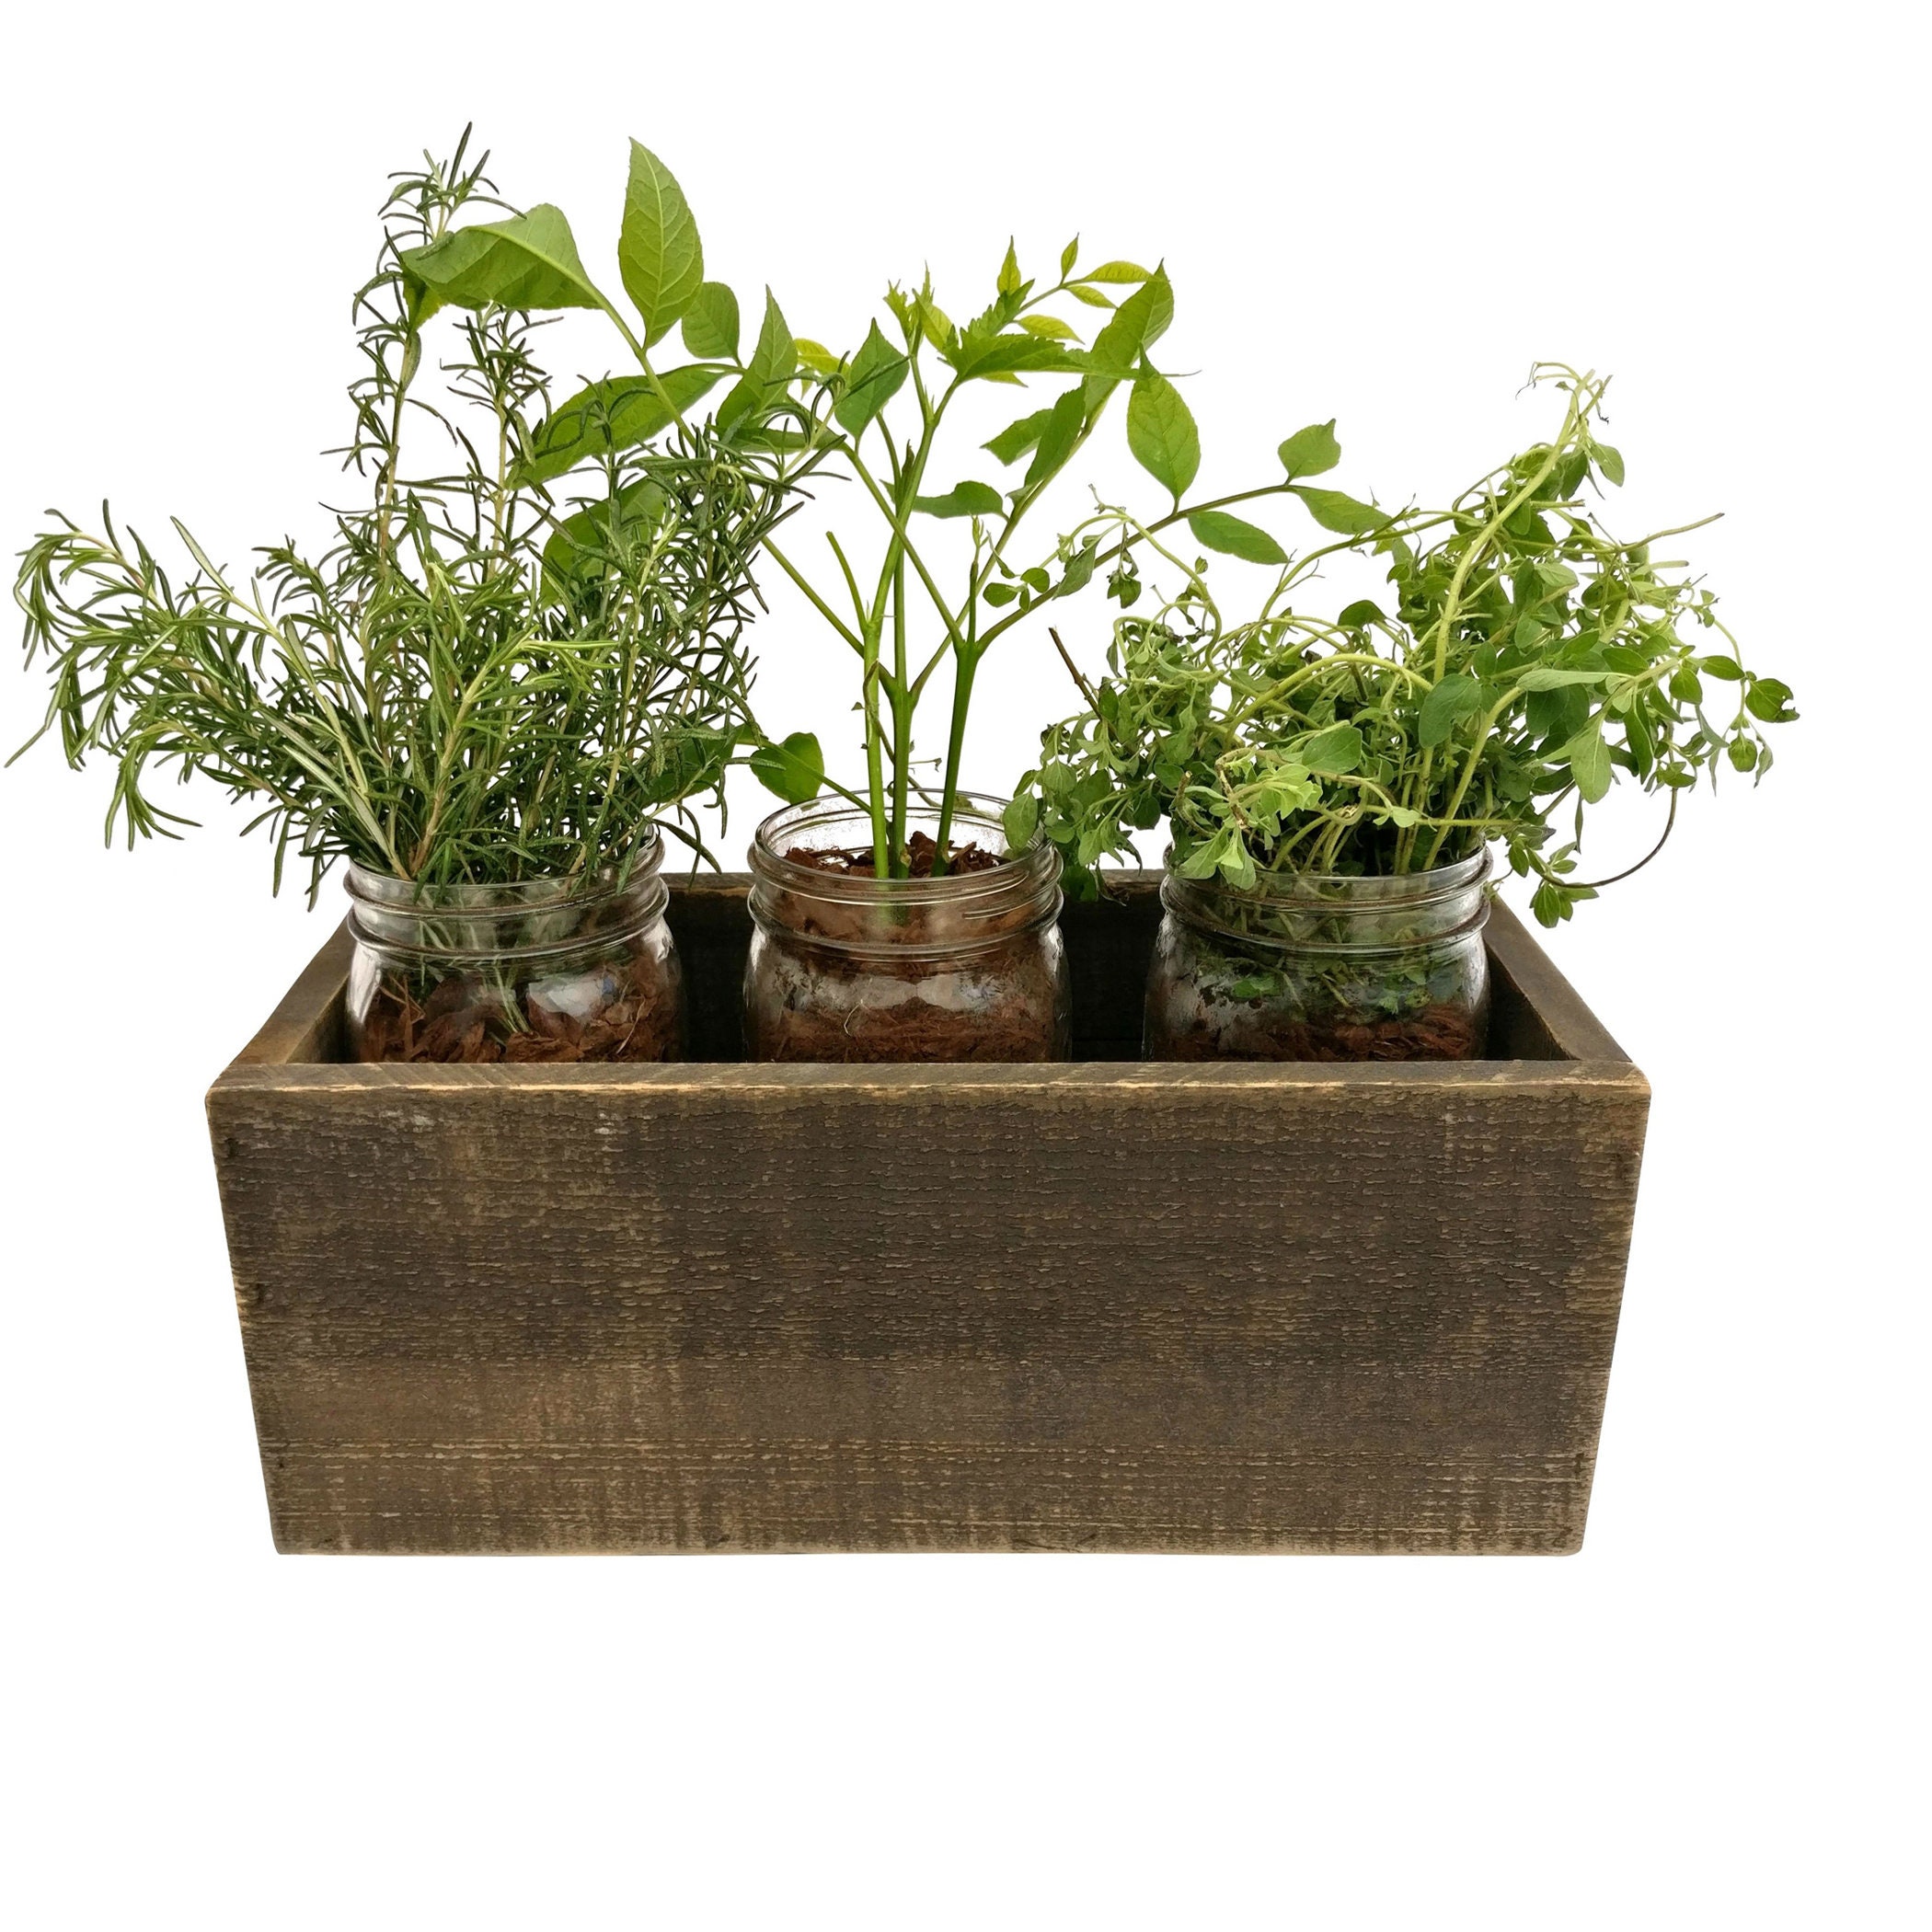 dark wood planter box decor garden herb indoor jars etsy